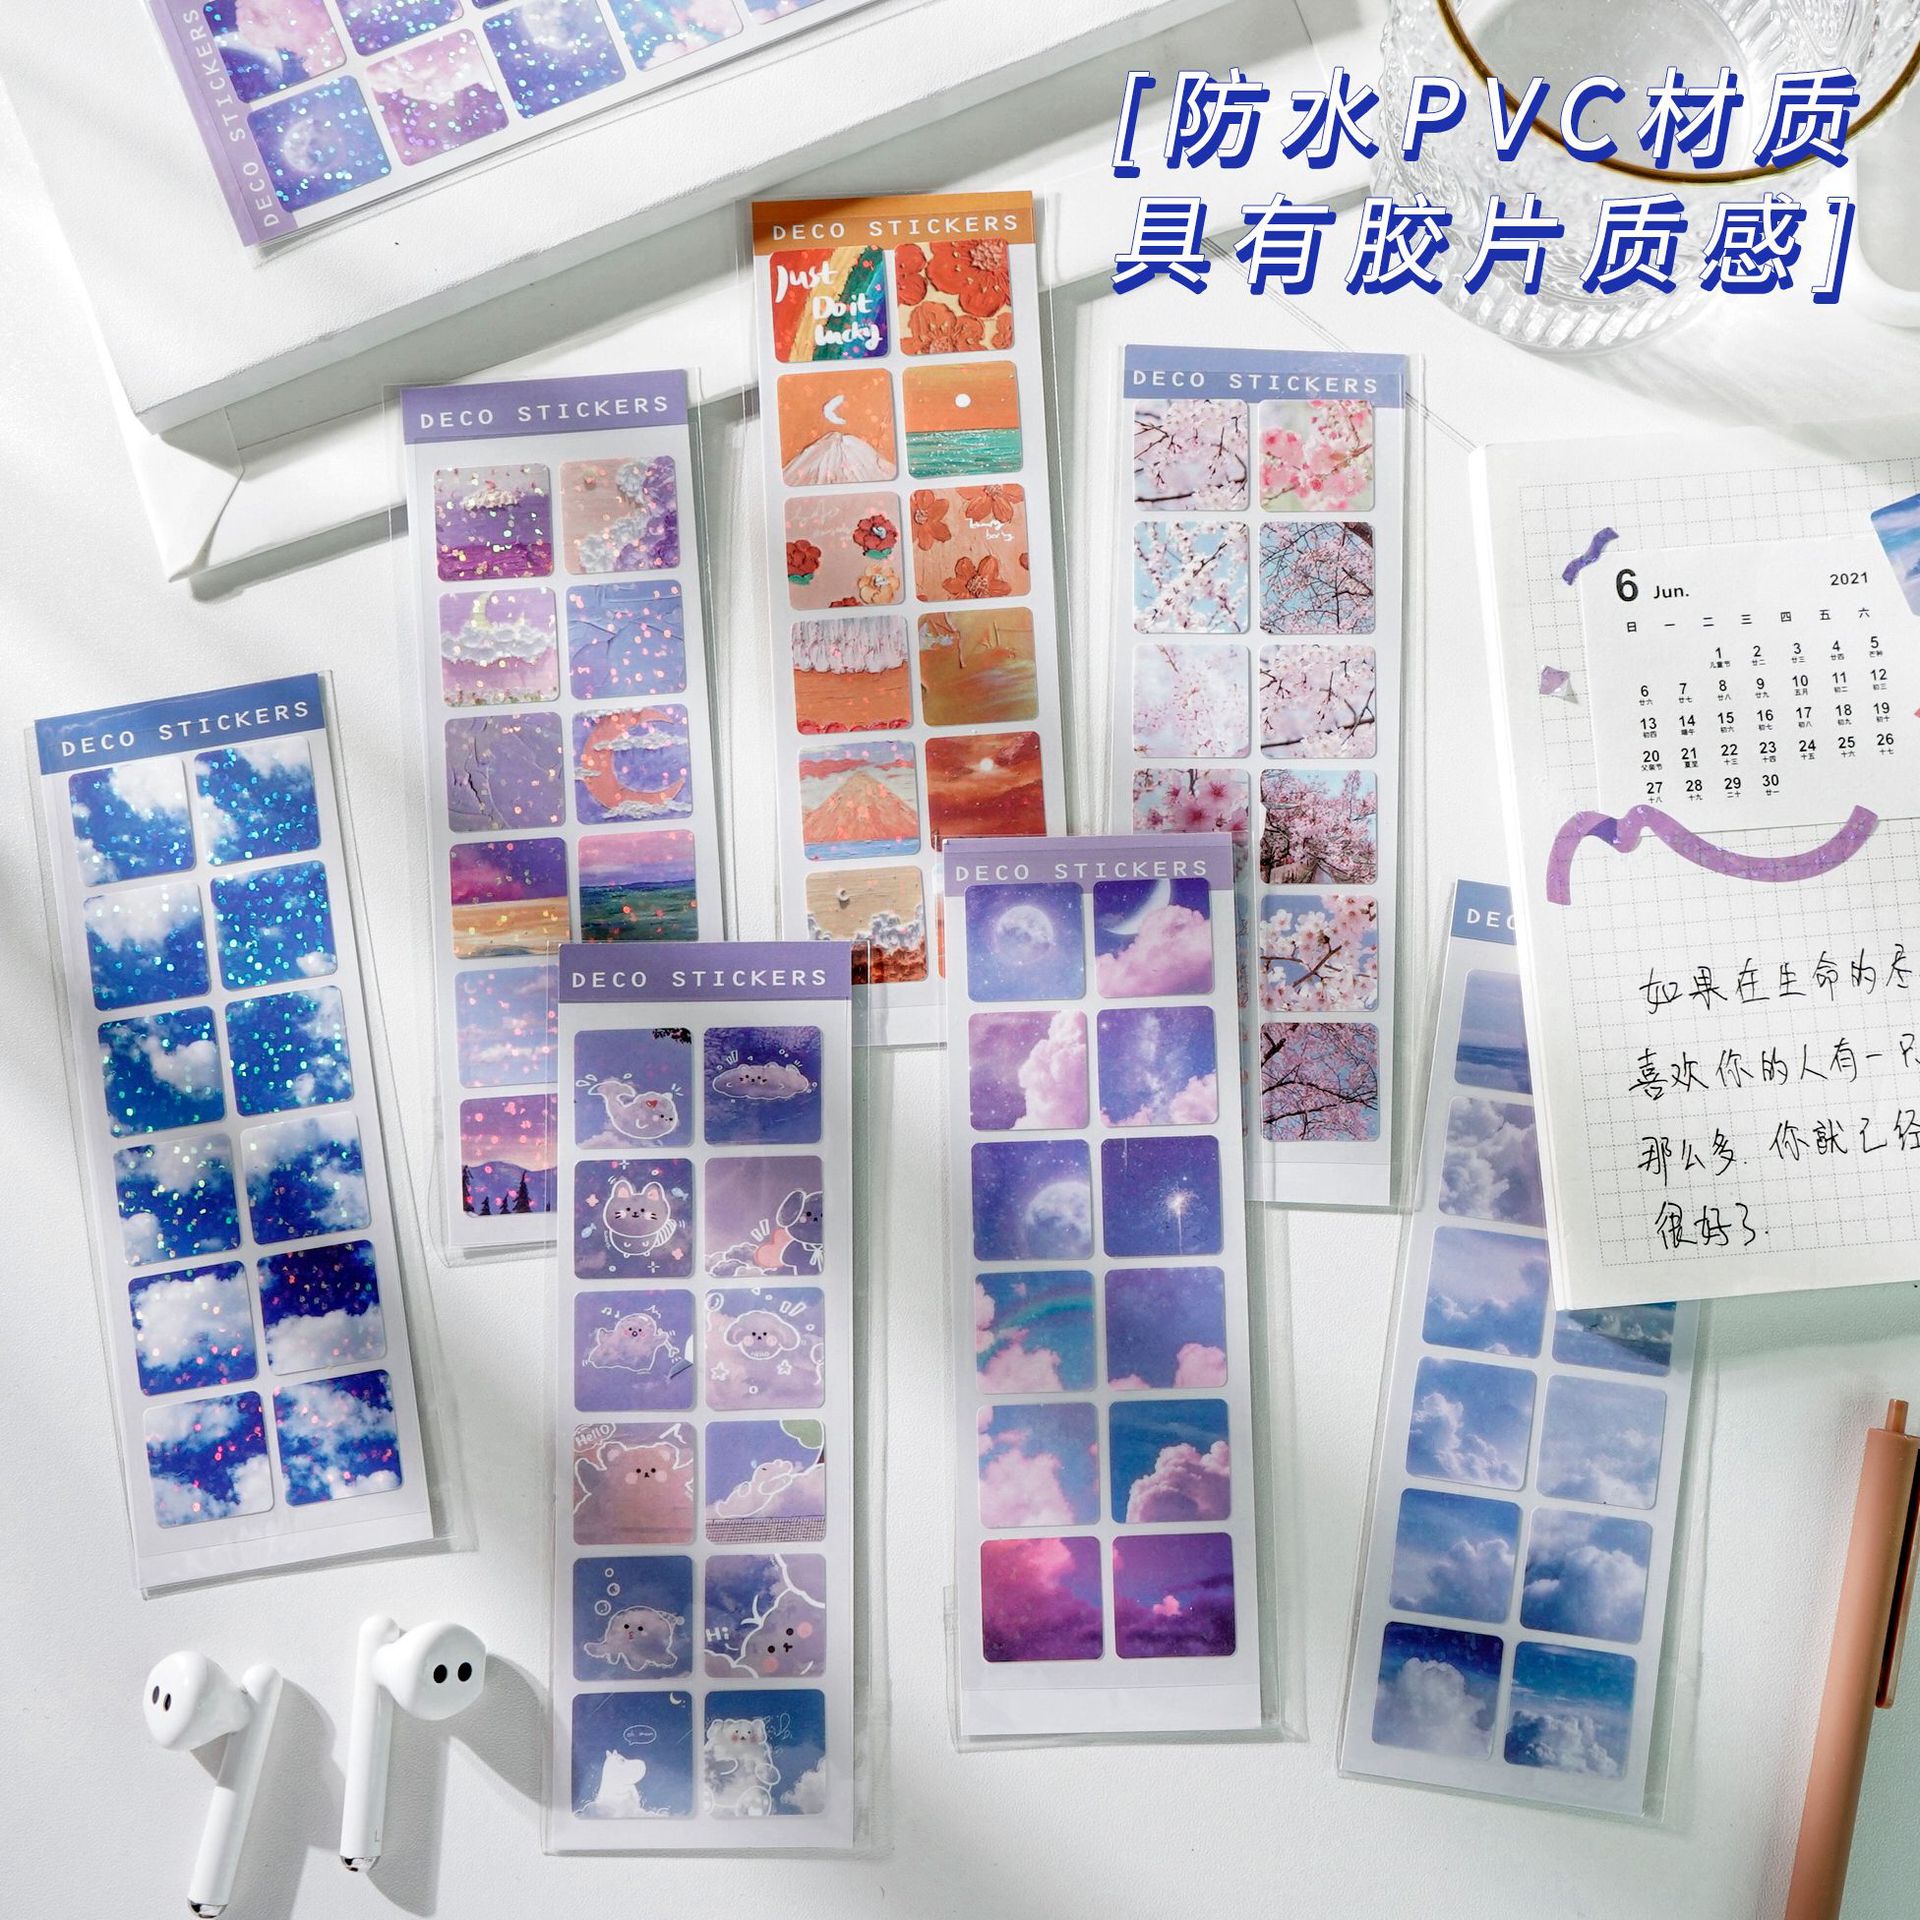 S42 - Tờ 12 sticker vuông PVC chống nước ánh nhũ bầu trời hoa anh đào trang trí đồ dùng học tập, sổ bullet journal